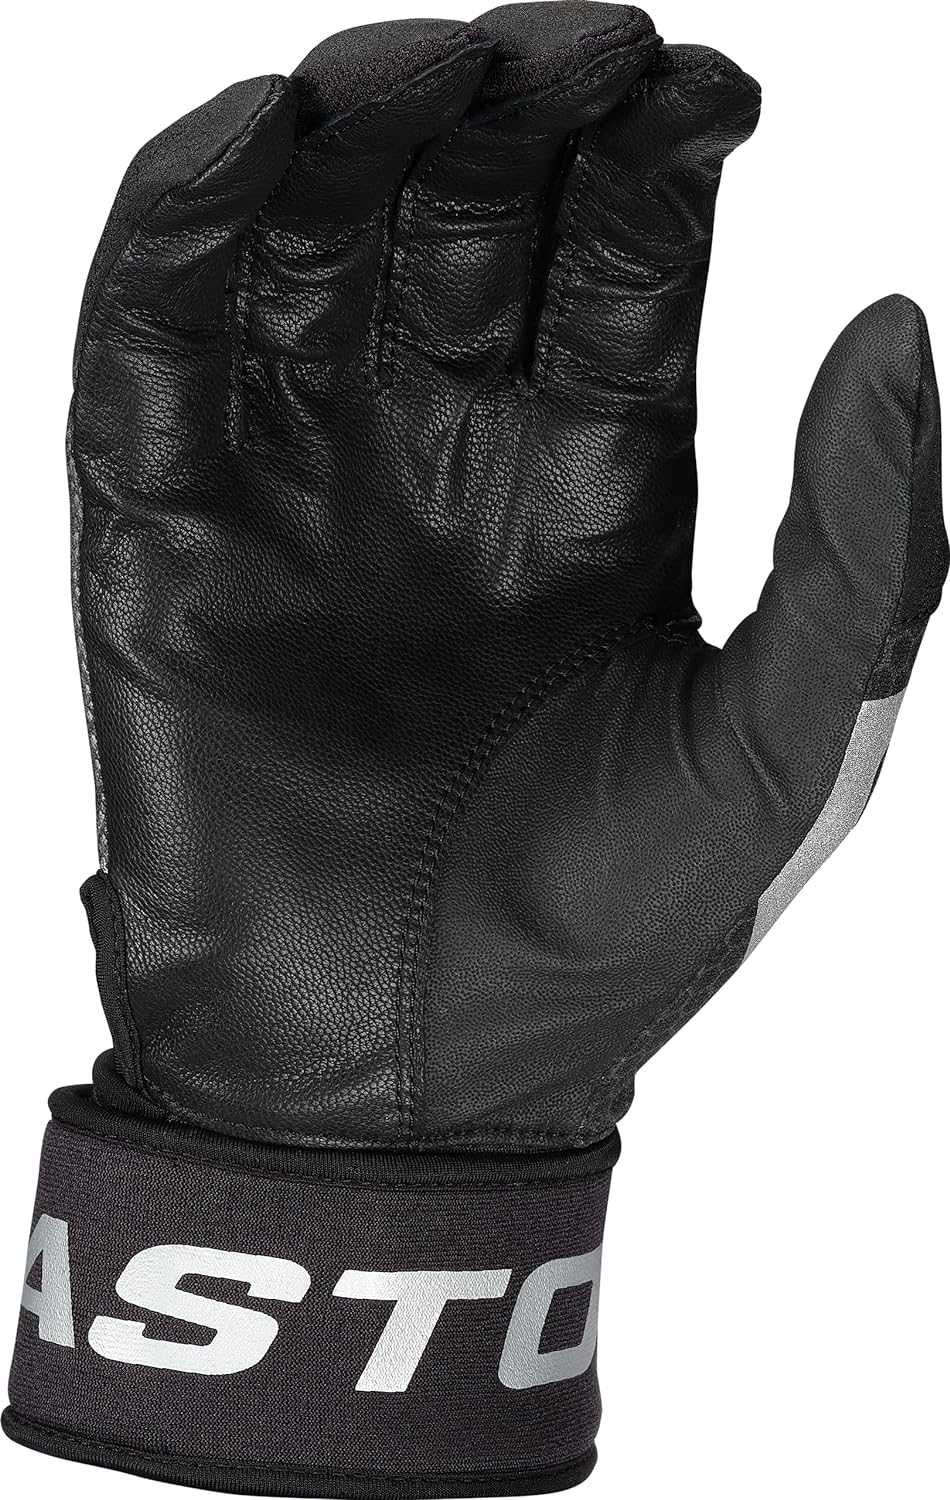 Easton MAV GT Locked-In Batting Gloves - Black - HIT a Double